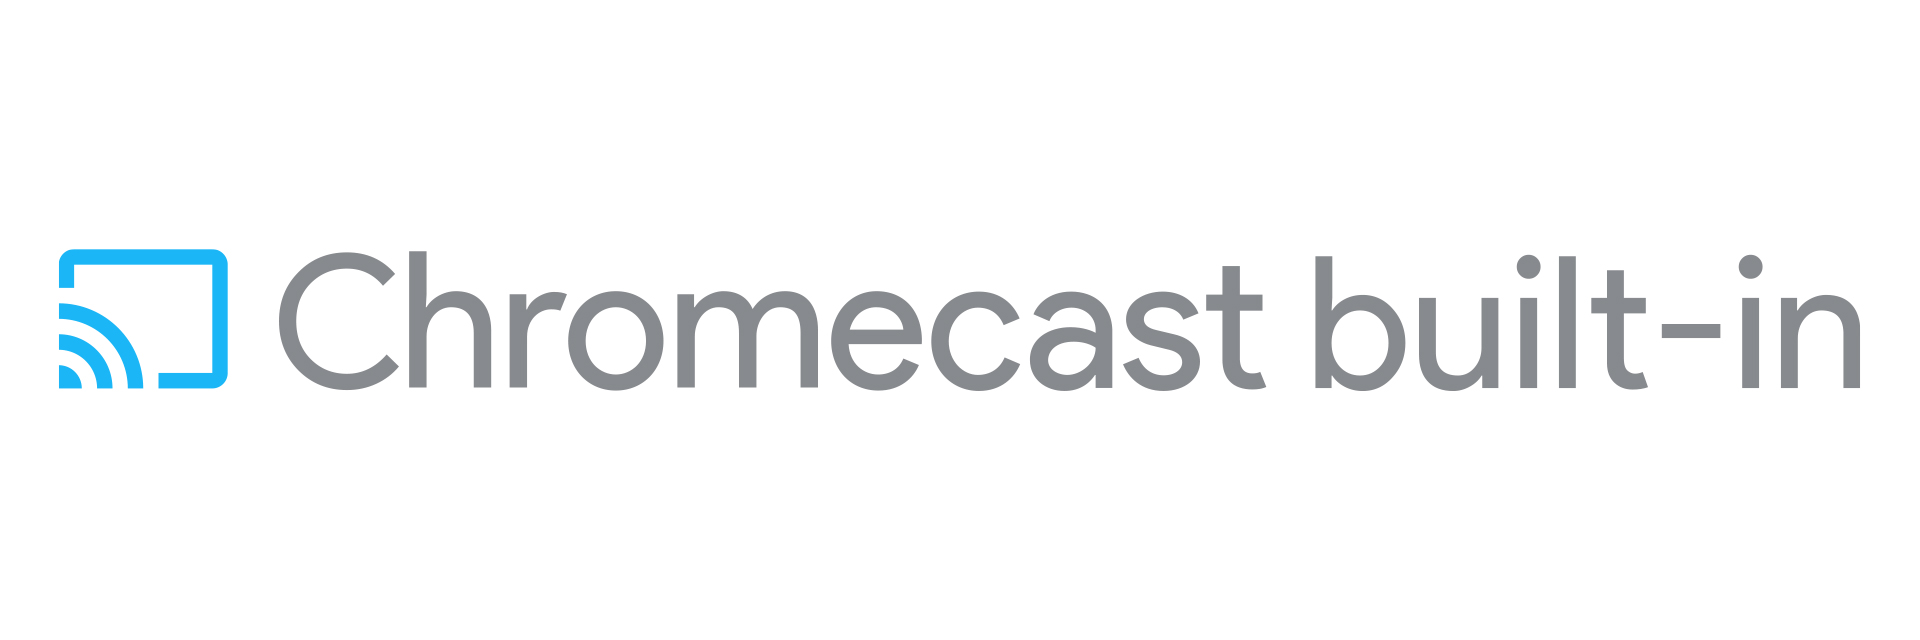 Chromecast Built-in | Bose